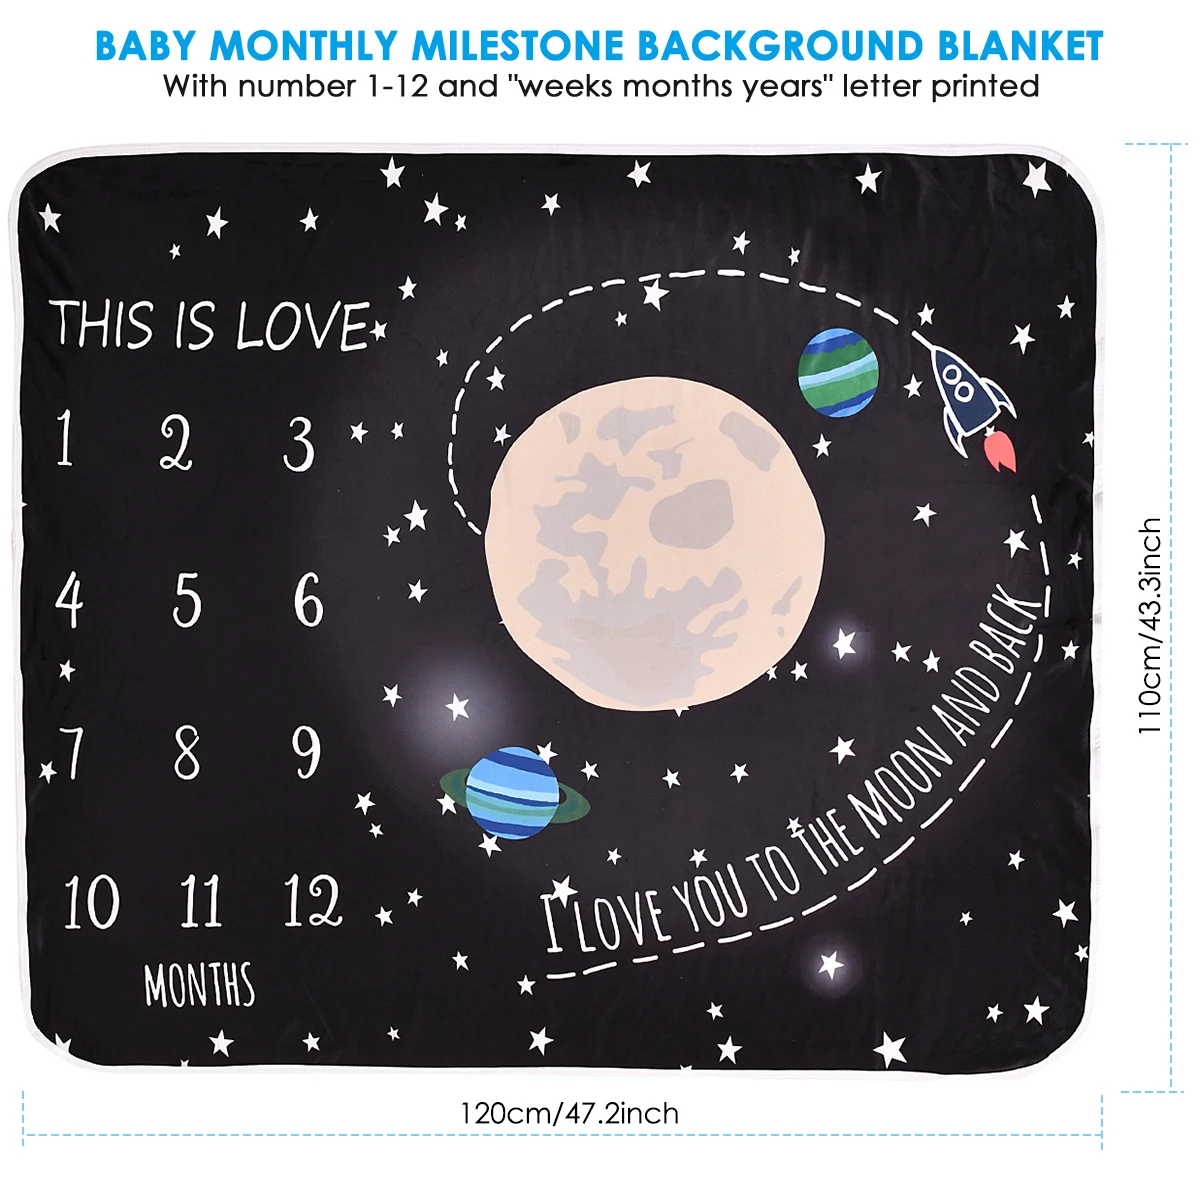 Детское одеяло-Ростомер пеленки для новорожденного фото черный фон ткань ежемесячный рост номер фотографии реквизит